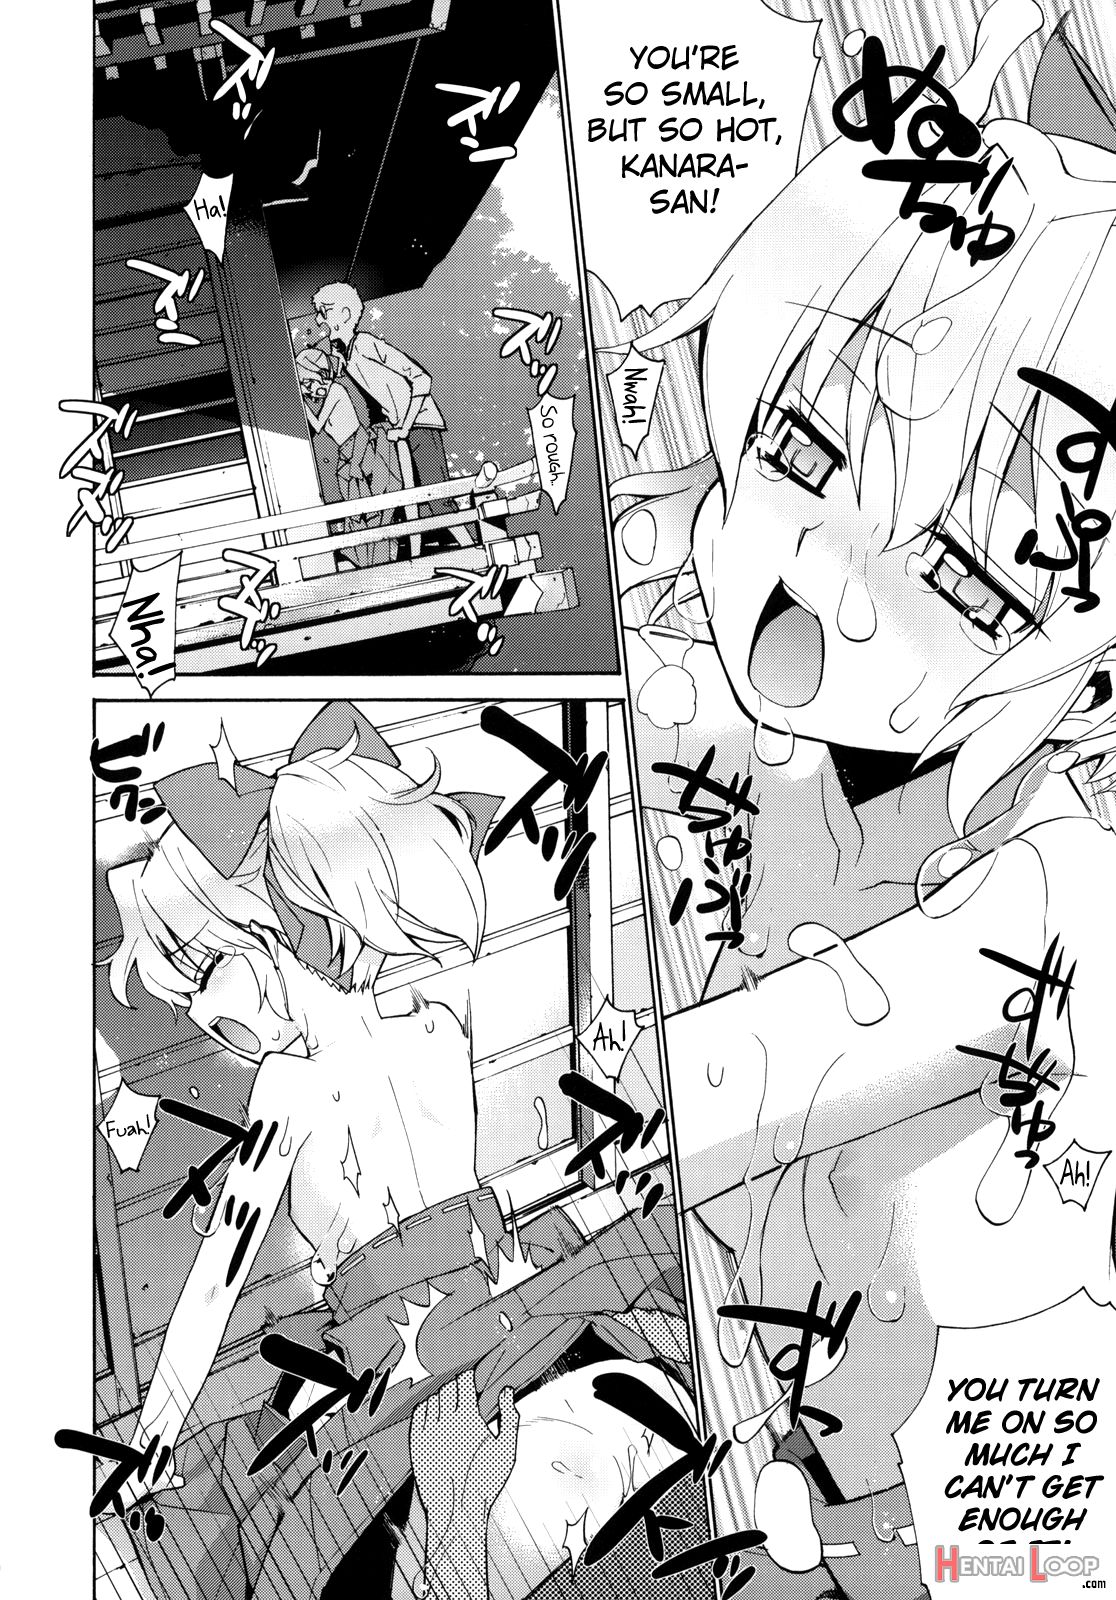 Kanara-sama No Nichijou 2 page 21